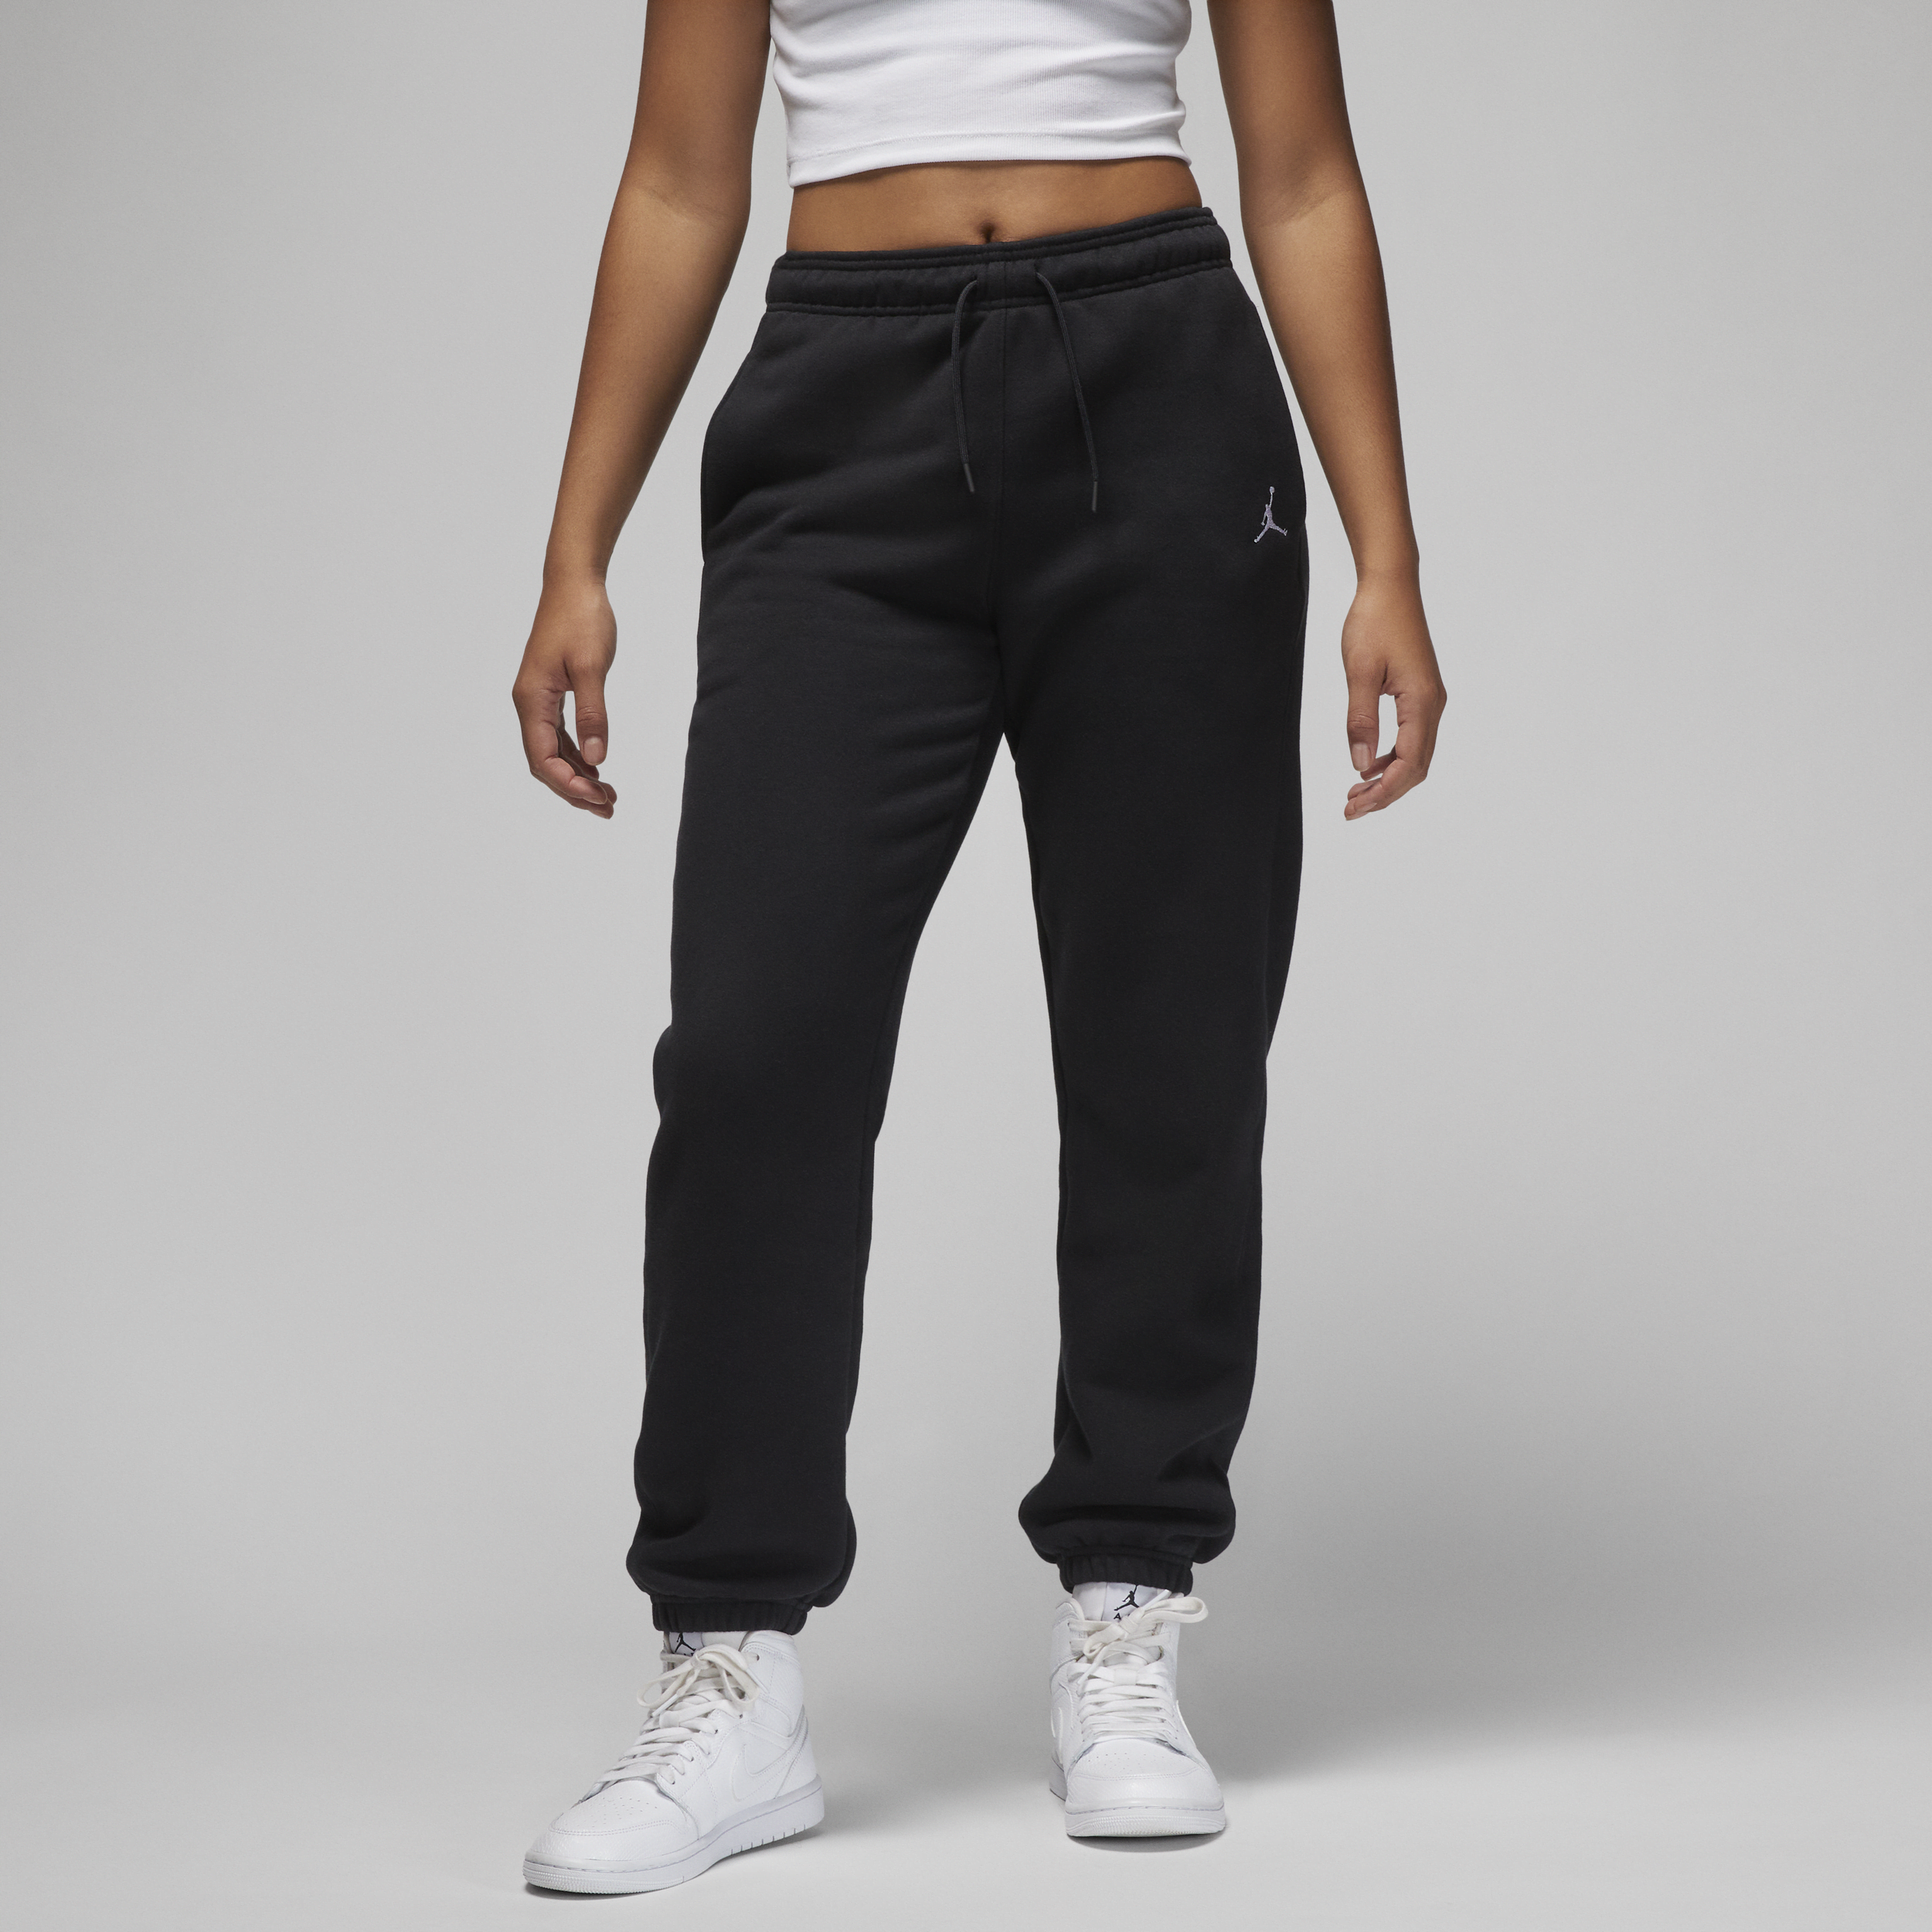 Jordan Brooklyn Fleece Pantalón - Mujer - Negro